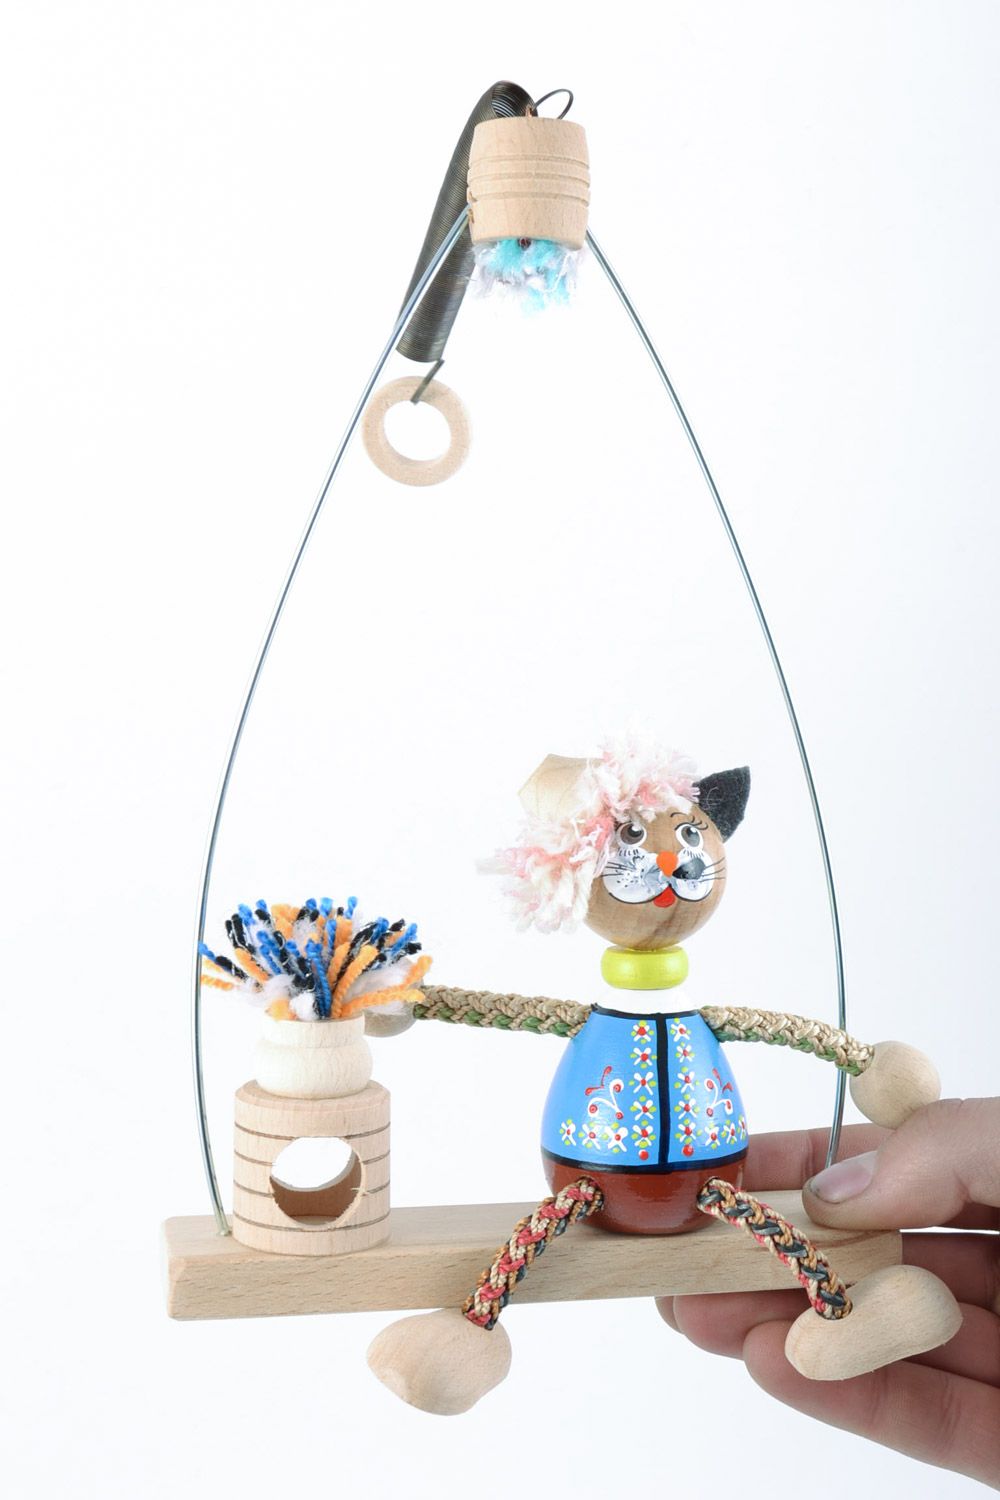 Designer handmade Spielzeug Kater aus Holz mit bunter Bemalung für kleines Kind  foto 1